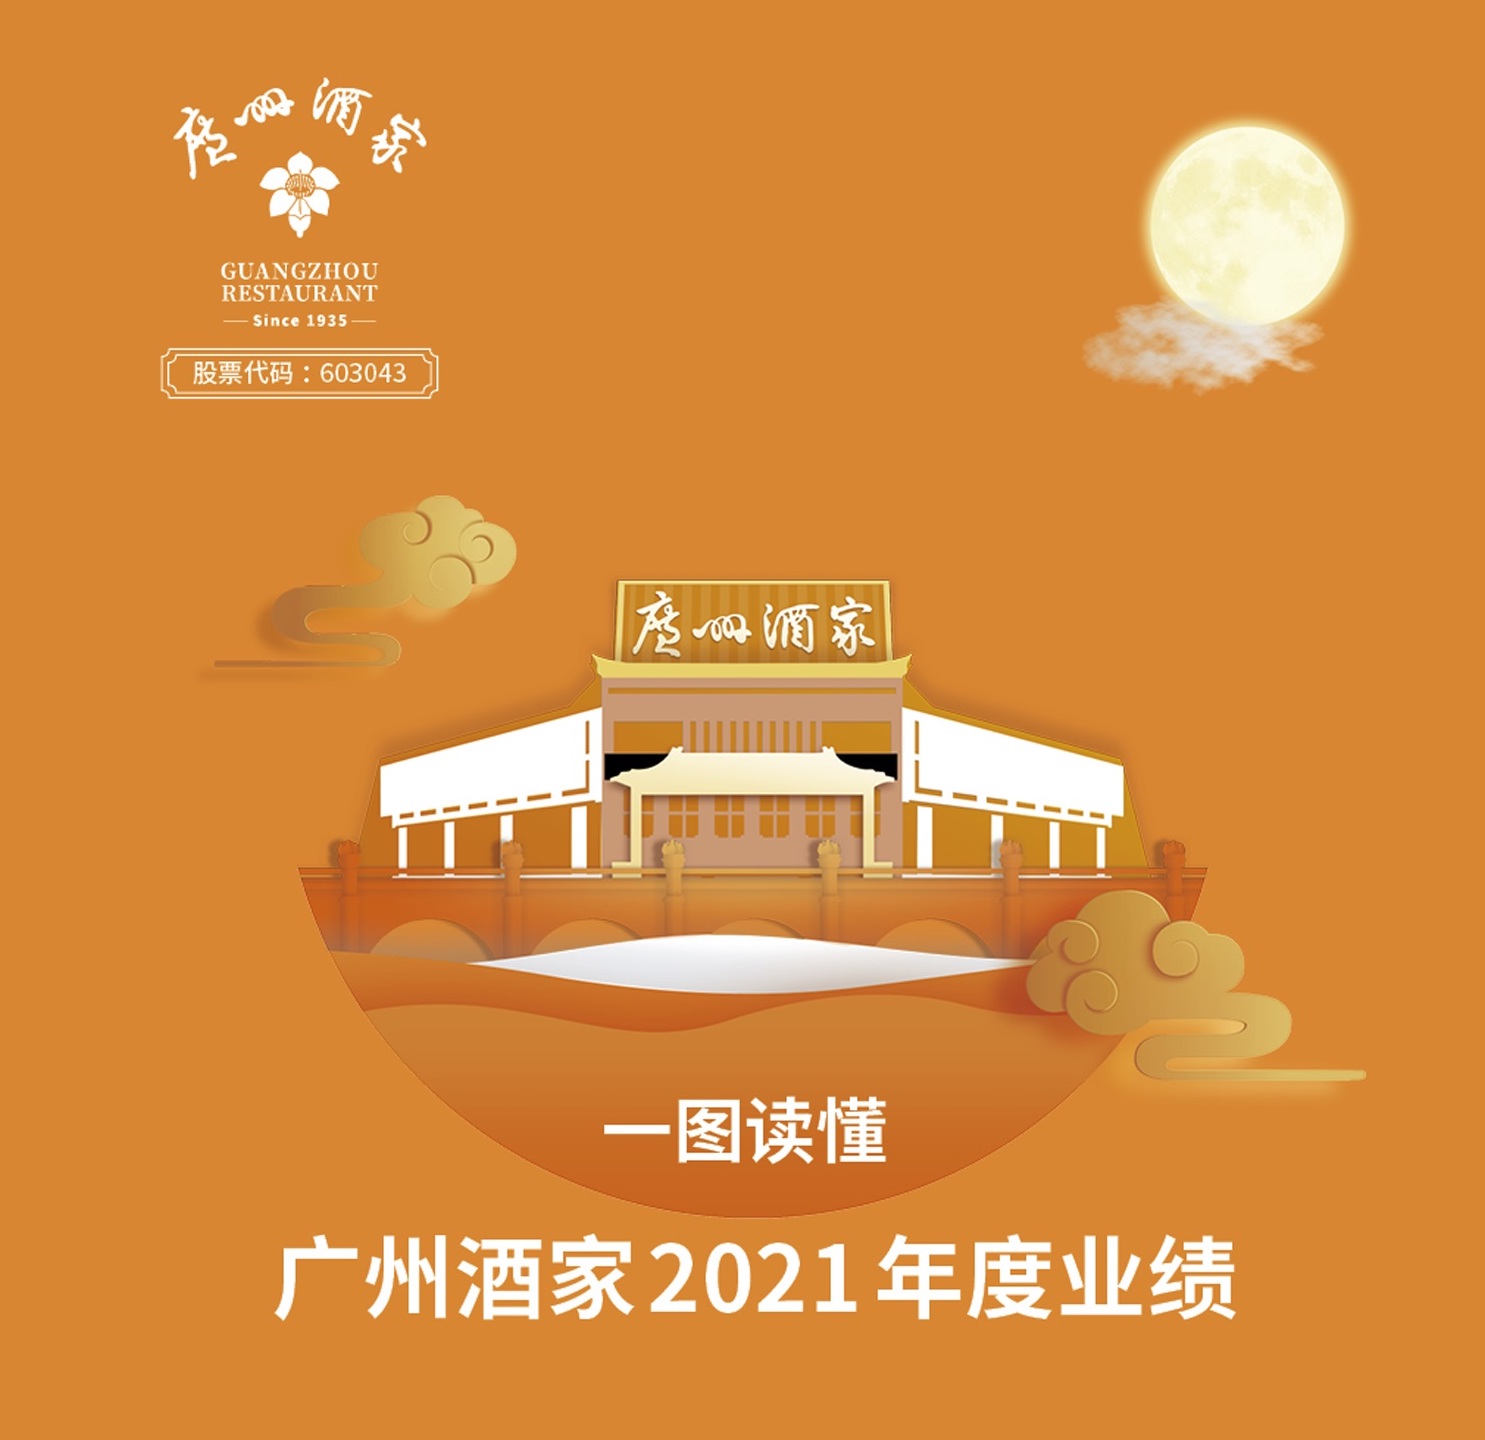 一图读懂︱广州酒家集团2021年度业绩